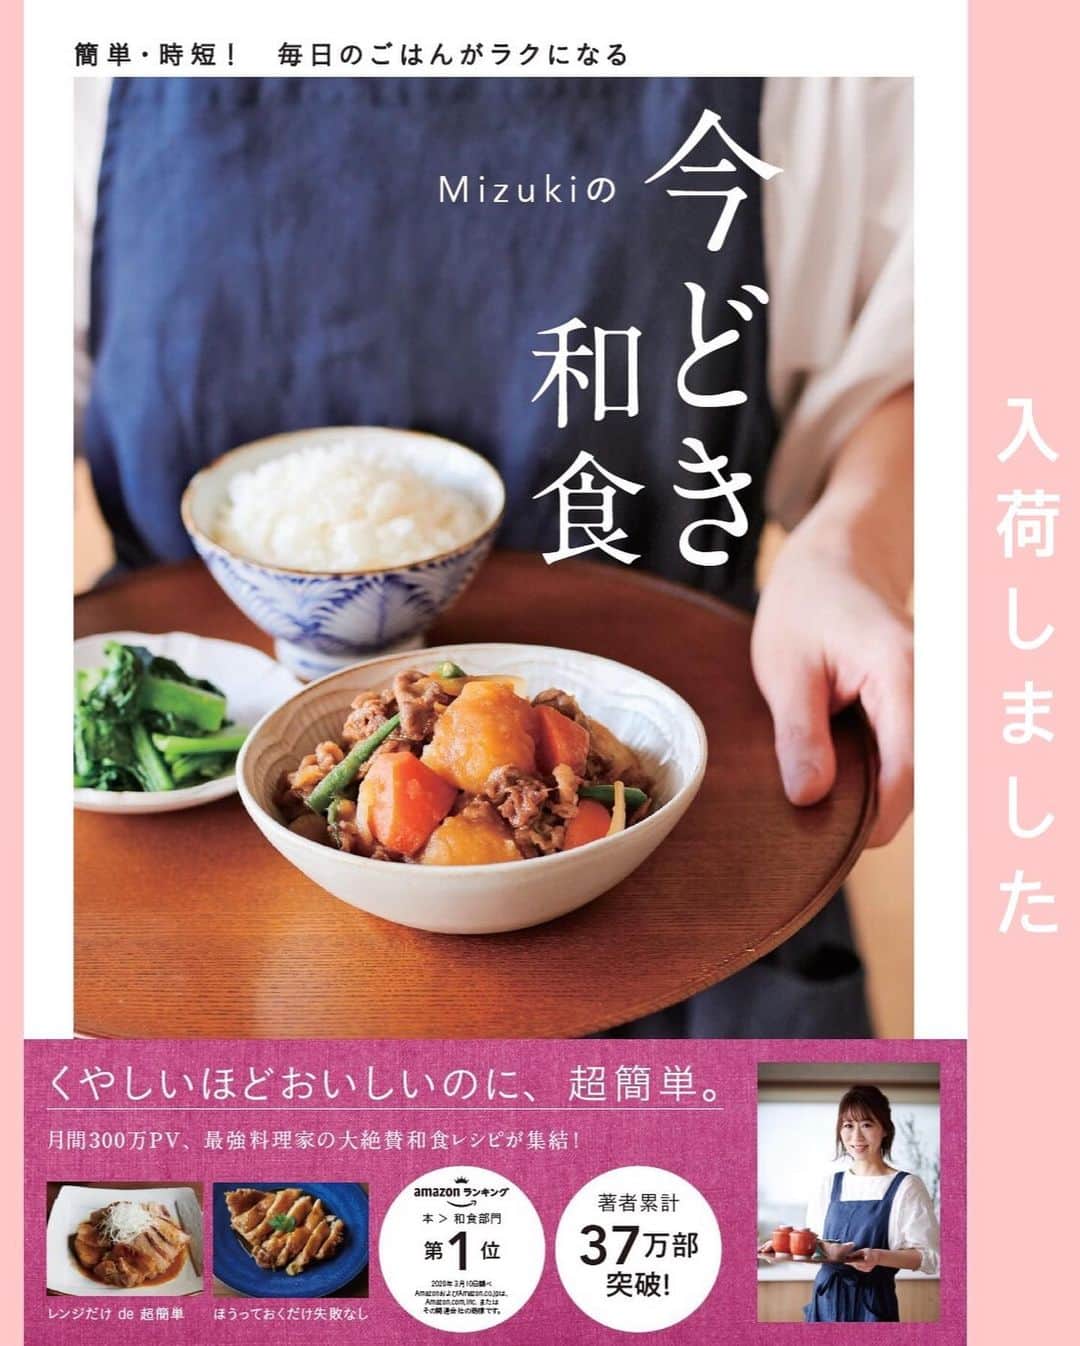 Mizuki【料理ブロガー・簡単レシピ】さんのインスタグラム写真 - (Mizuki【料理ブロガー・簡単レシピ】Instagram)「・﻿ 【レシピ】ーーーーーーーー﻿ ♡速攻ゼリー(カルピス)♡﻿ ーーーーーーーーーーーーー﻿ ﻿ ﻿ ﻿ おはようございます(*^^*)﻿ ﻿ 今日ご紹介させていただくのは﻿ 速攻できるカルピスゼリー♡﻿ 通常3〜4時間冷やしかためるゼリーが﻿ 10分くらいで食べられますよ(*´艸`)﻿ 思い立ったらすぐに作れる手軽さで﻿ 普段のおやつにぴったりです♩﻿ ﻿ もちろん作り方は超簡単♡﻿ 材料も分量も覚えやすいので﻿ よかったらお試し下さいね(*^^*)﻿ ﻿ ﻿ ﻿ ーーーーーーーーーーーーーーーーーーーー﻿ 【3人分くらい】﻿ カルピス原液...100ml﻿ 水...100ml﻿ 氷...100g﻿ 粉ゼラチン...5g﻿ ﻿ 1.ゼラチンを水大2(分量外)に振り入れてふやかす。﻿ 2.ボウルにカルピスと水を入れて混ぜる。続けて1を600Wのレンジで20秒加熱して加えて混ぜる。﻿ 3.氷を入れ、ゼリー状にかたまるまでゴムベラでやさしく混ぜる。(動画参照)﻿ (※ここからは好みで→)ここまでの工程でフルフルに仕上がります♩もう少しかためたい方は、それ以上混ぜずに冷蔵庫で10分程冷やして下さい♩﻿ ーーーーーーーーーーーーーーーーーーーー﻿ ﻿ ﻿ ﻿ 《ポイント》﻿ ♦︎ゼリー液は優しく混ぜて下さい♩﻿ ♦︎氷のサイズによりかたまり方に多少違いが出ます☆もしゼリー状になる前に氷が溶けてしまっても、冷蔵庫で少し冷やせばかたまりますよ♩﻿ ﻿ ﻿ ﻿ ﻿ ﻿ ﻿ ＿＿＿＿＿＿＿＿＿＿＿＿＿＿＿＿＿﻿ 【💎インスタライブのお知らせ💎】﻿ 明日14日(日曜日)の14時頃から﻿ インスタライブを行います✨﻿ 詳細は後ほど(*^^*)﻿ ￣￣￣￣￣￣￣￣￣￣￣￣￣￣￣￣￣﻿ ﻿ ﻿ ﻿ ﻿ ﻿ ﻿ 🔻入荷しました🔻﻿ ストーリーにリンク貼っています🙇‍♀️﻿ ＿＿＿＿＿＿＿＿＿＿＿＿＿＿＿＿＿＿＿﻿ 📕\ \ 新刊発売中 / /📕﻿ 簡単・時短！ 毎日のごはんがラクになる﻿ ✨🦋 【 #Mizukiの今どき和食 】🦋✨﻿ ＿＿＿＿＿＿＿＿＿＿＿＿＿＿＿＿＿＿＿﻿ ﻿ なるべく少ない材料で﻿ 手間も時間も省きながら﻿ 簡単にできるおいしい和食レシピ♩﻿ 簡単に失敗なくマスターできる一冊で﻿ もっと気軽に、カジュアルに﻿ 和食を楽しんで下さいね(*^^*)﻿ ﻿ ﻿ ーーー ⭐️PART.1 メインおかず ⭐️ーーー﻿ 素材別にレシピをご紹介しています♩﻿ 和食の定番から新定番まで﻿ どれも押さえておきたいメニューばかり。﻿ 肉じゃがはフライパンで！焼き豚はレンジで！﻿ ぶり大根は切り身を使って手軽に作ります♩﻿ ﻿ ーーー ☘️PART.2 サブおかず ☘️ーーー﻿ 年中手に入るお手頃野菜と﻿ 乾物や大豆、こんにゃくなどを使った﻿ 副菜レシピをたっぷり掲載！！﻿ 普段SNSではメインおかずばかりなので﻿ 本では副菜にも力を入れています(*^^*)﻿ ﻿ ーーー 🌸PART.3 ごはんと汁物 🌸ーーー﻿ ささっと作れる丼と麺、﻿ みんなで食べたいいなり寿司や﻿ 手巻きごはんもご紹介！﻿ 複数の炊き込みごはんと﻿ 味噌汁&和風スープも盛りだくさん！﻿ ﻿ ﻿ 各レシピのポイントは﻿ 【写真付きで丁寧に解説】﻿ 副菜レシピもたっぷりなので﻿ 【メインページに副菜メモもつけました】﻿ ＊このメインにはこの副菜が合いますよ〜﻿ という献立の提案です(*^^*)﻿ 【その他コラムも充実】﻿ 全127品中ほぼ全て﻿ 【本だけのレシピです！】﻿ ＿＿＿＿＿＿＿＿＿＿＿＿＿＿＿＿＿＿＿﻿ ﻿ ﻿ ﻿ ﻿ ﻿ ＿＿＿＿＿＿＿＿＿＿＿＿＿＿＿＿＿﻿ 🎀発売中🎀﻿ 【#ホットケーキミックスのお菓子 】﻿ ﻿ 一冊まるっとホケミスイーツ♩﻿ 普段のおやつから﻿ 特別な日にも使えるレシピを﻿ この一冊に詰め込みました(*^^*)﻿ ホットケーキミックスを使えば﻿ 簡単に本格的なお菓子が作れますよ♡﻿ ＿＿＿＿＿＿＿＿＿＿＿＿＿＿＿＿＿﻿ ﻿ ⭐️ストーリー、ハイライト、プロフ画面に﻿ 本のURLを貼らせていただいております♩﻿ →(@mizuki_31cafe )﻿ ﻿ ﻿ ﻿ ﻿ #ゼリー#カルピス#ゼラチン#混ぜて冷やして超簡単#おやつ#お菓子作りならコッタ#うちで過ごそう#おうち時間#Mizuki#簡単レシピ#時短レシピ#節約レシピ#料理#レシピ#フーディーテーブル#マカロニメイト#おうちごはん#デリスタグラマー#料理好きな人と繋がりたい#おうちごはん#lover#foodpic#follow#cooking#recipe#lin_stagrammer#stayhome#速攻ゼリーm」6月13日 7時50分 - mizuki_31cafe